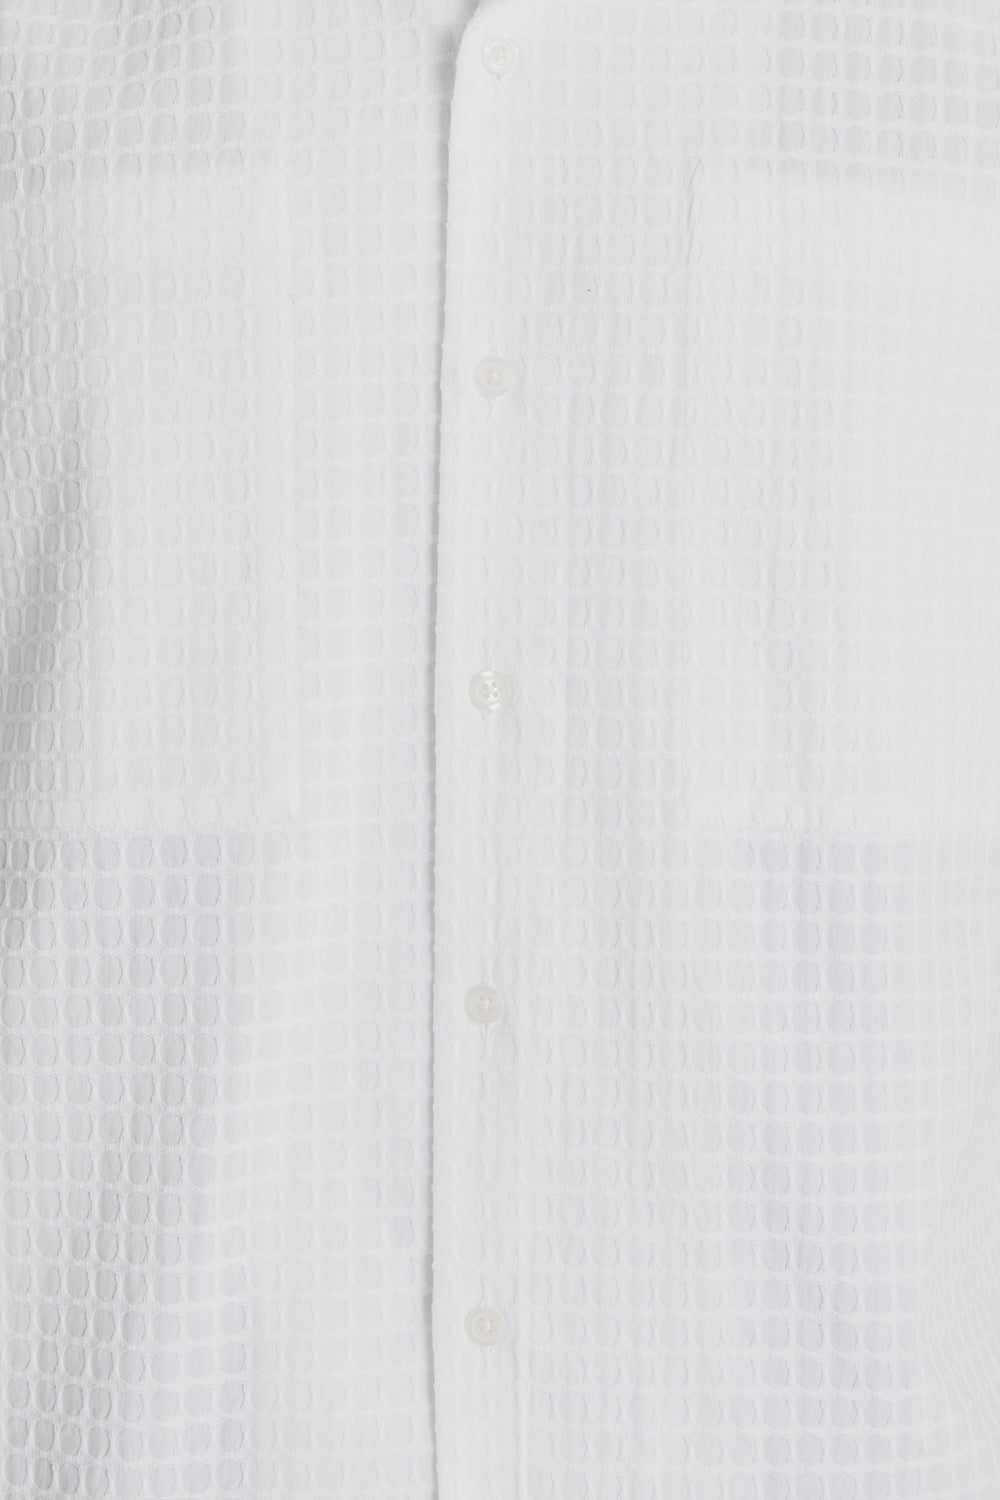 Kestin Eyemouth Shirt in White